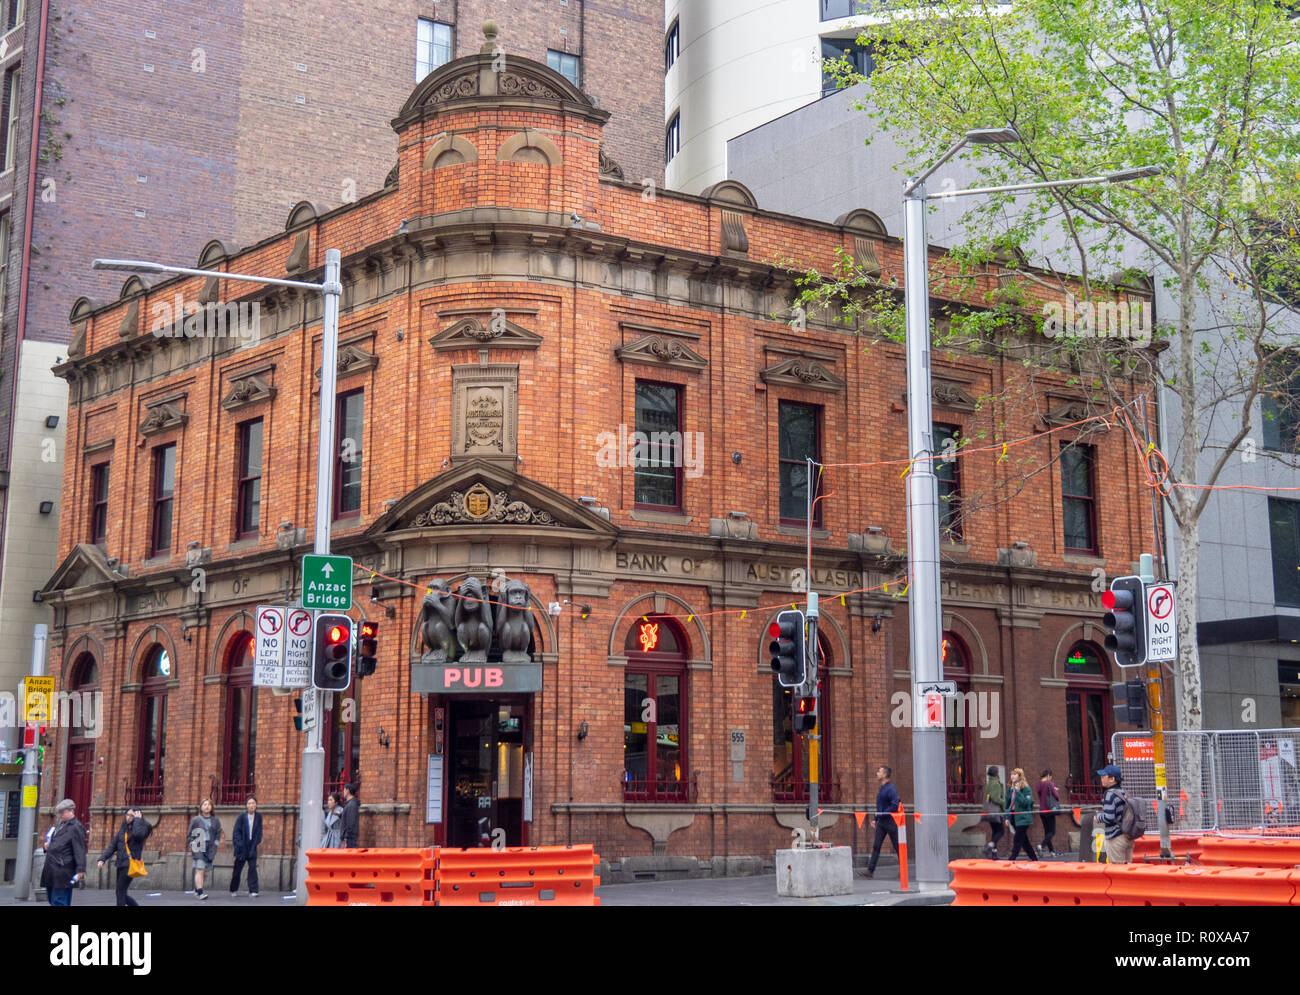 Ehemalige Bank von Australasien nun die 3 Affen Pub an der Ecke Liverpool St George Street Sydney, NSW, Australien. Stockfoto